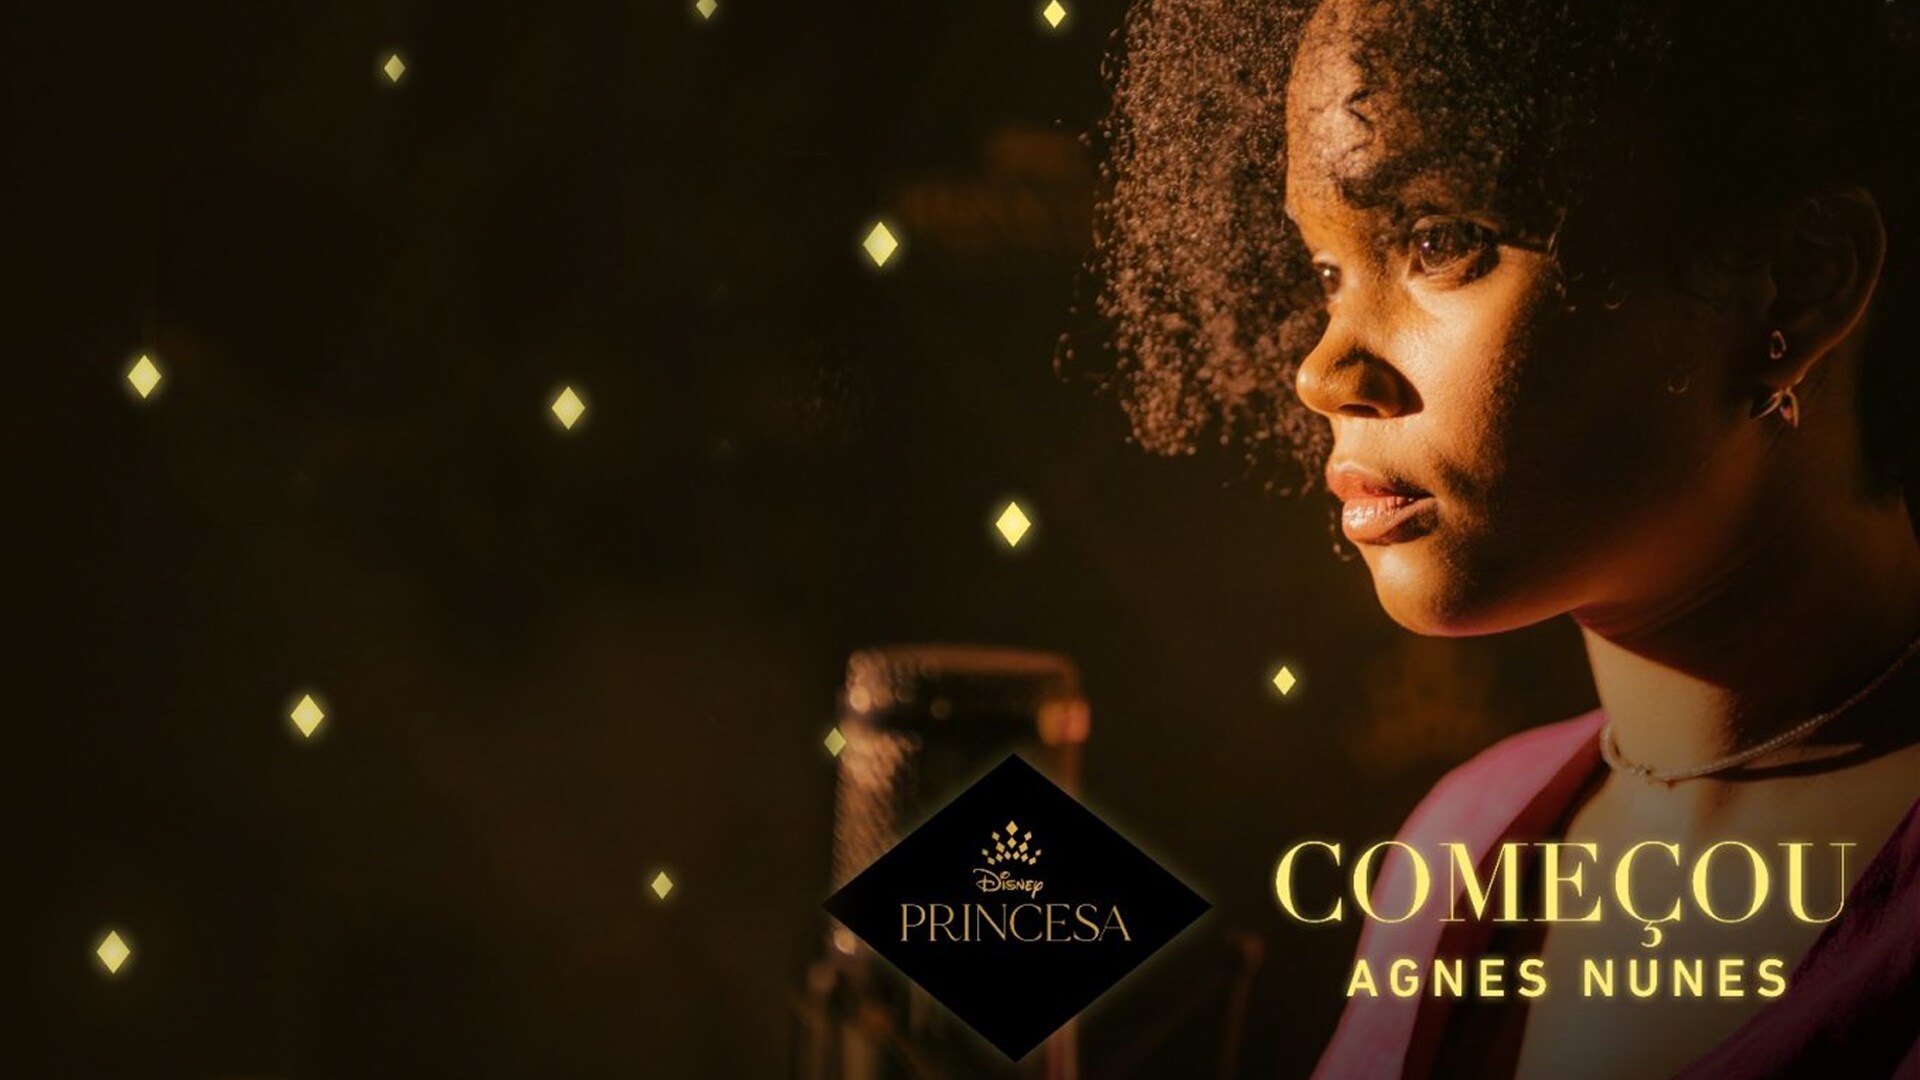 Agnes Nunes é a voz brasileira de "Começou", single original da campanha Disney Princesa - É Hora de Celebrar